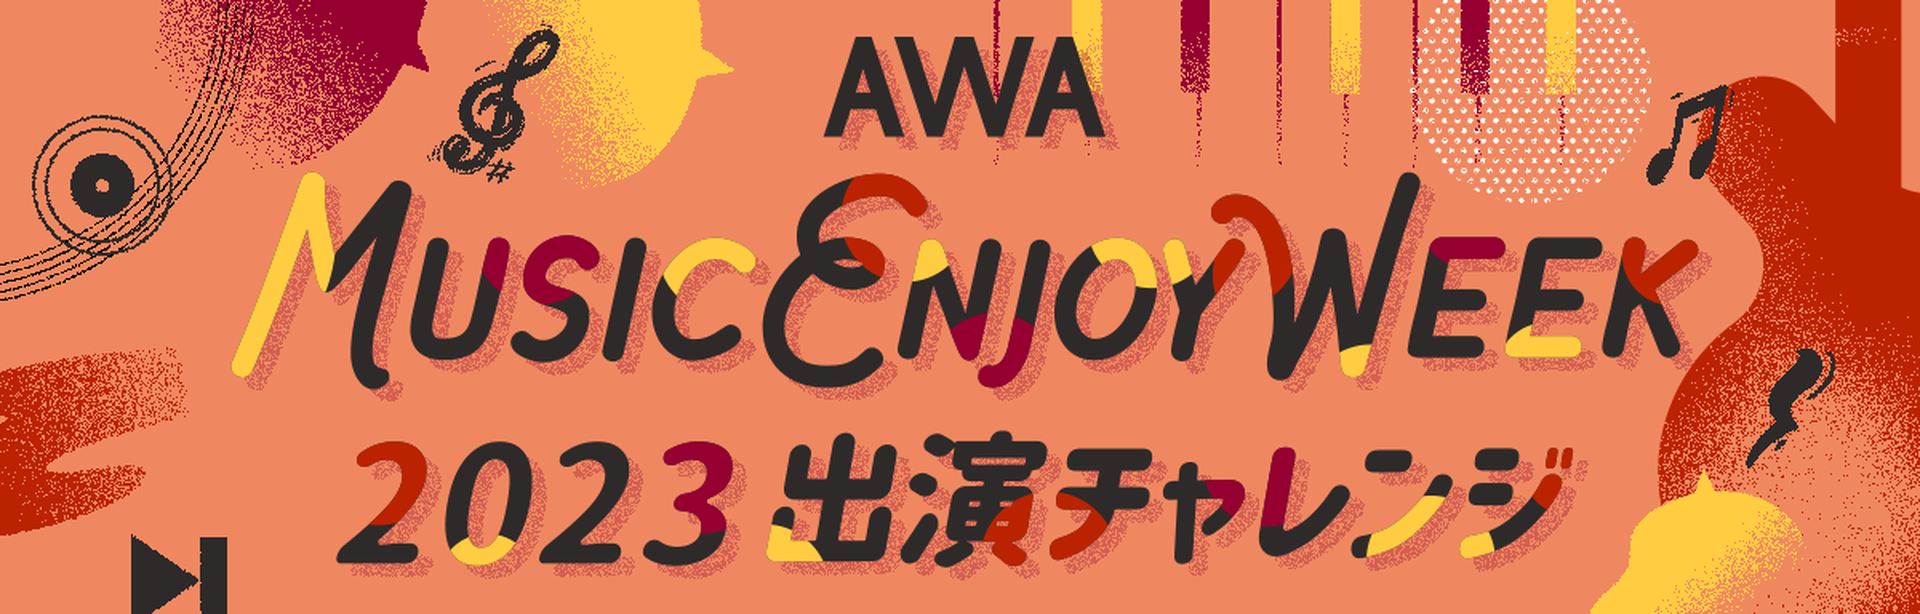 音楽好きのための祭典「AWA MUSIC ENJOY WEEK」出演チャレンジ開催